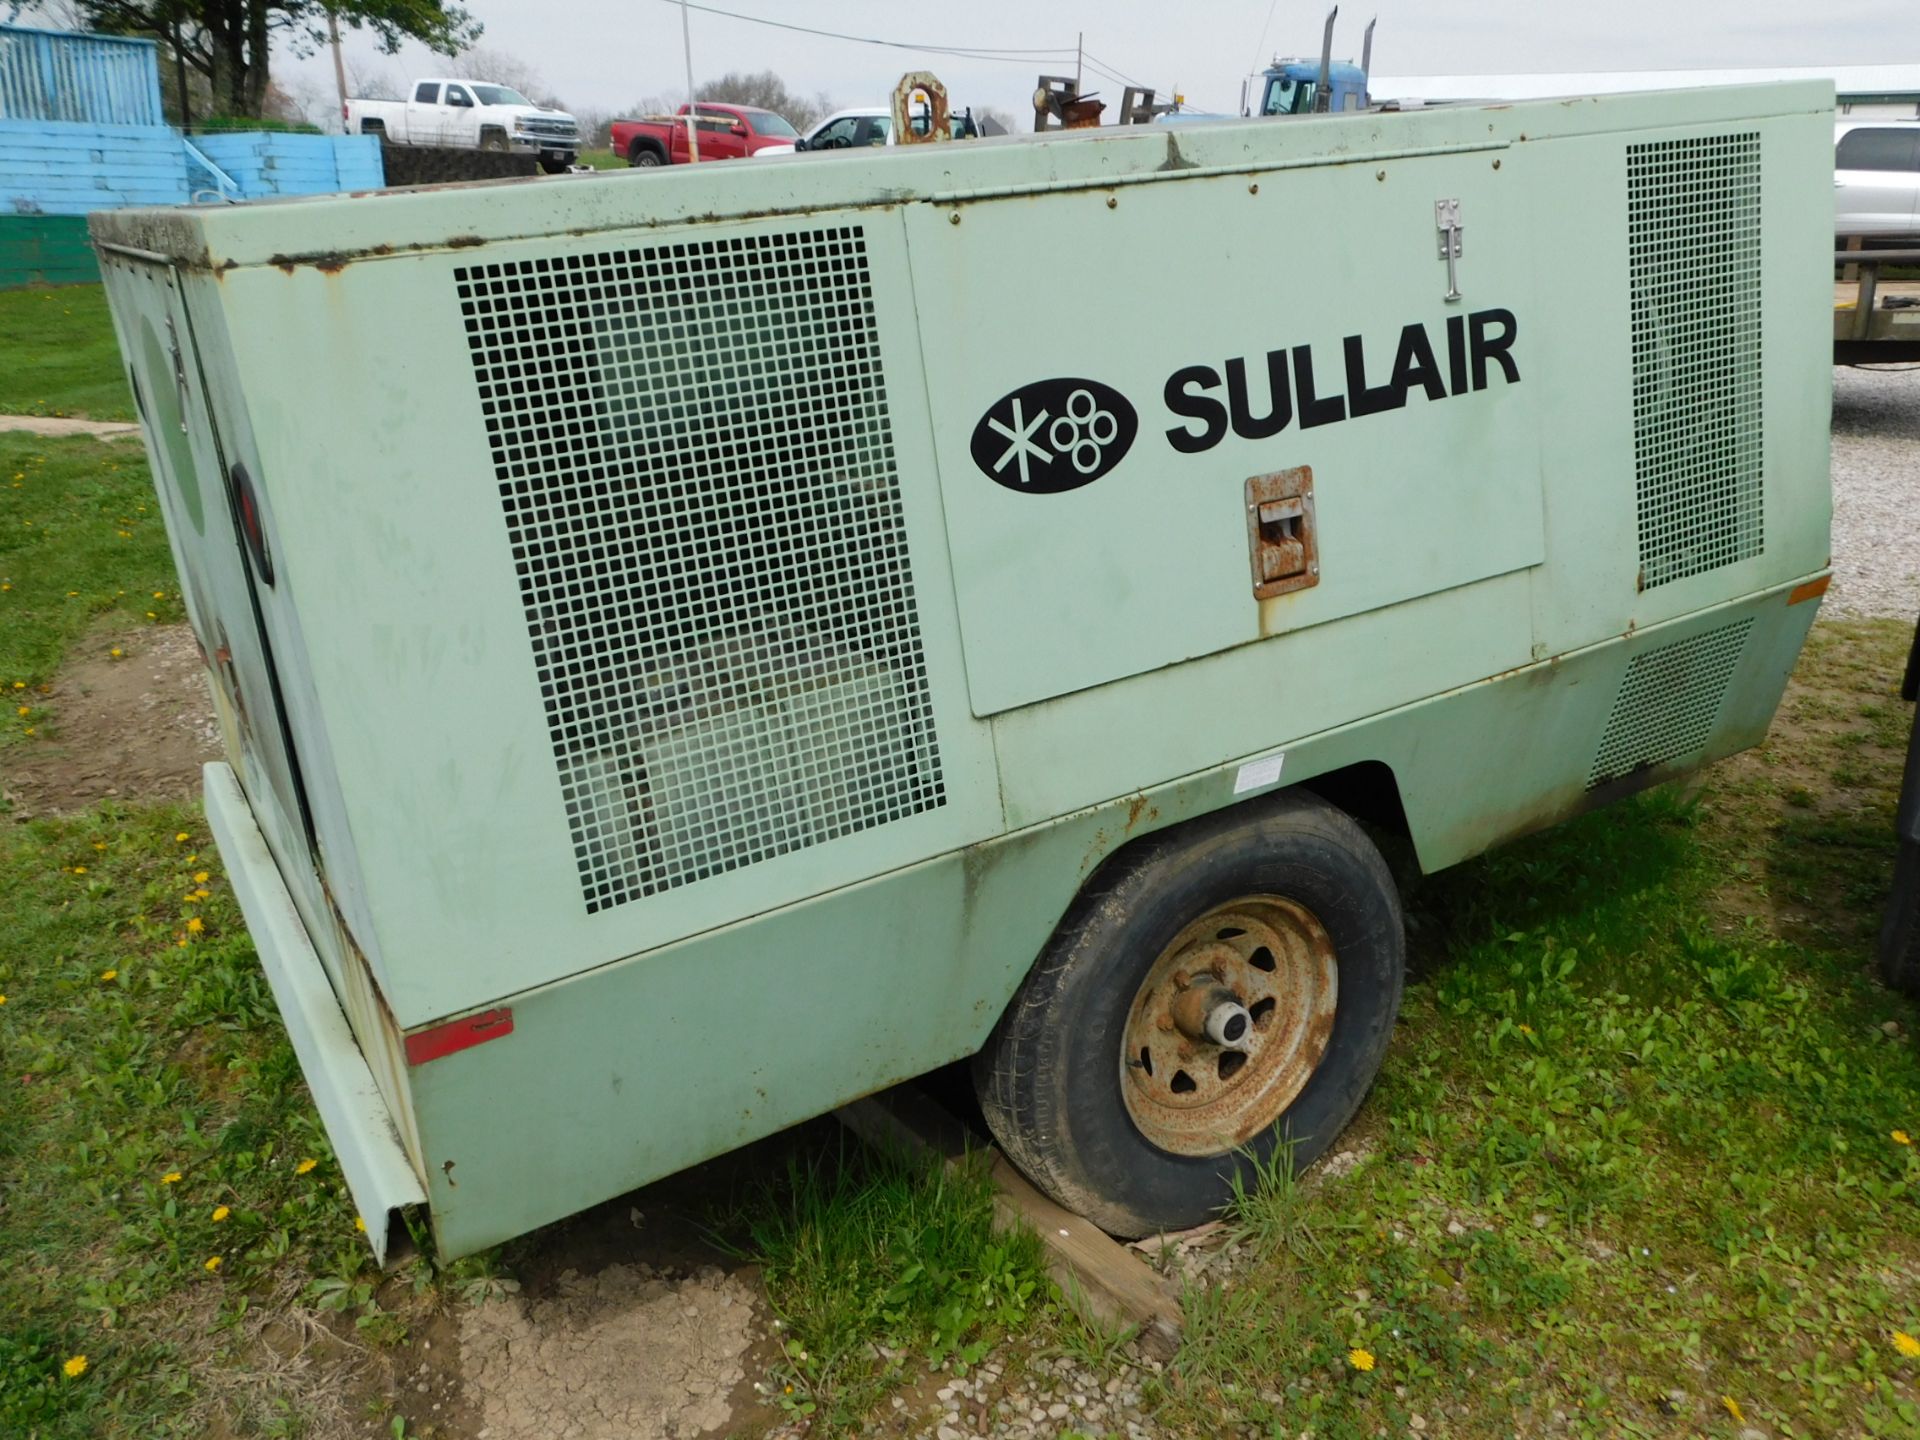 Sullair Model 375-DPQ-JD Diesel Powered Portable Air Compressor, s/n E04-116764, John Deere Diesel - Image 4 of 17